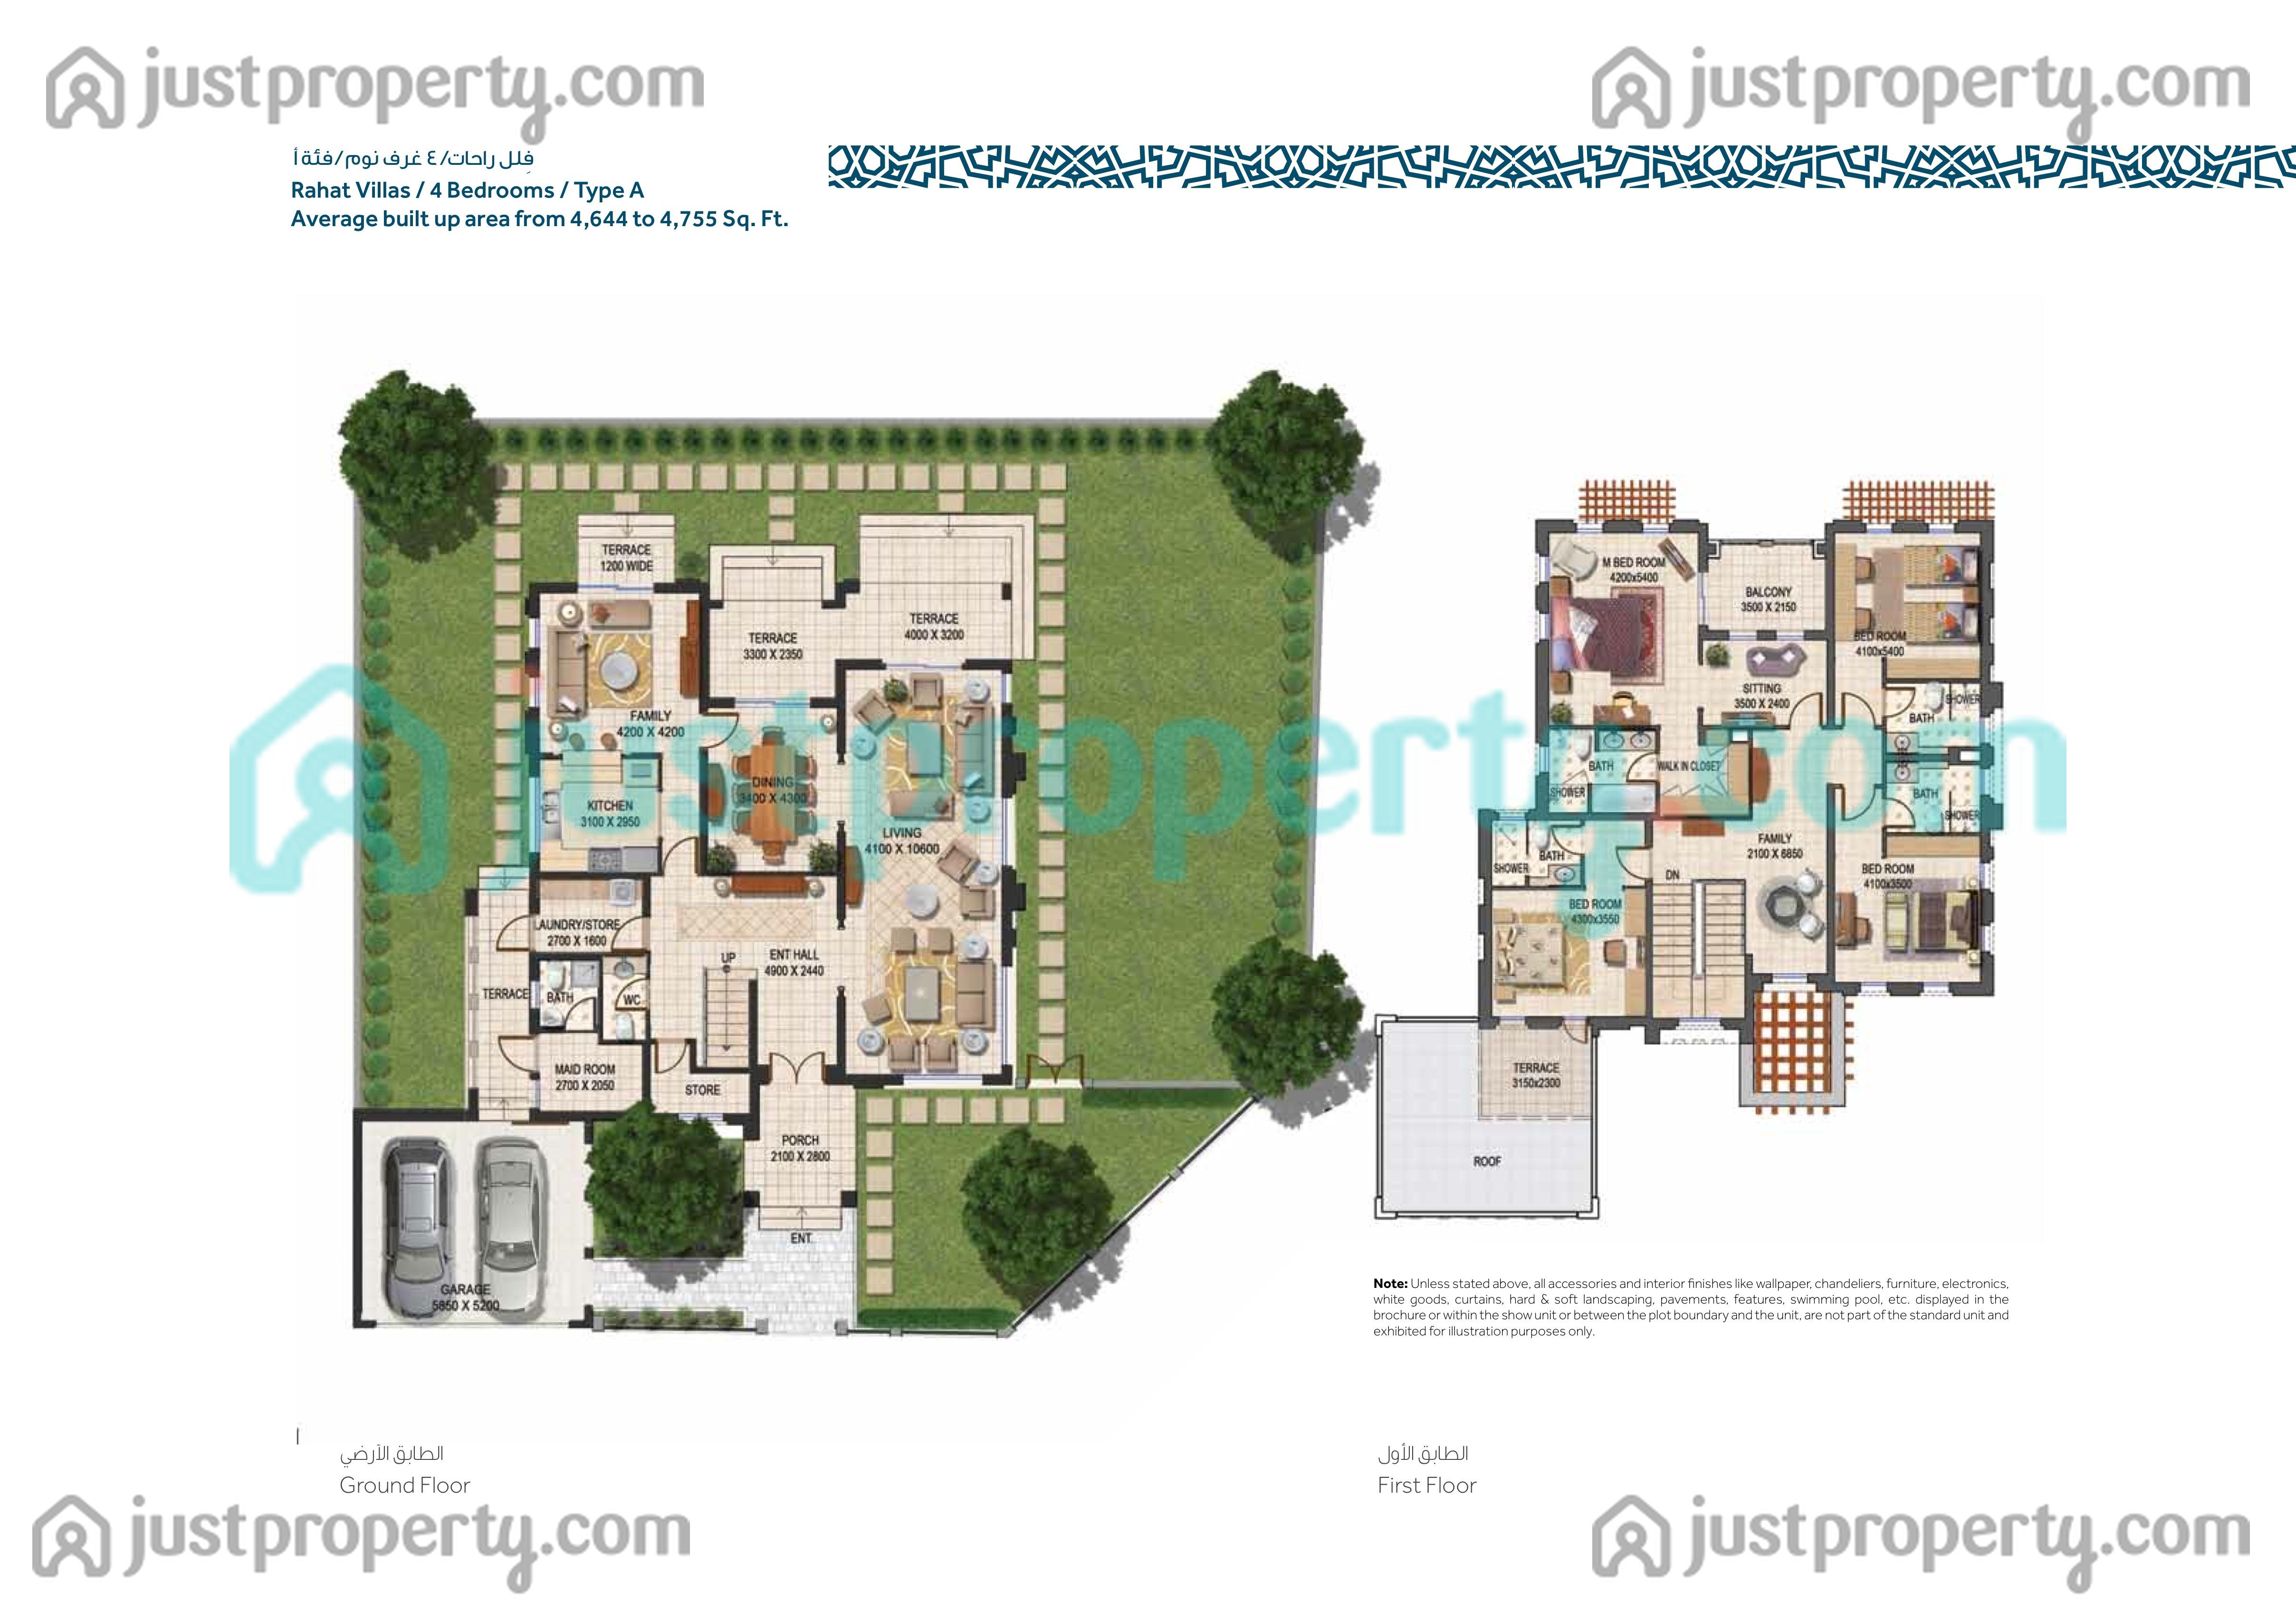 Mudon Rahat Villas Floor Plans